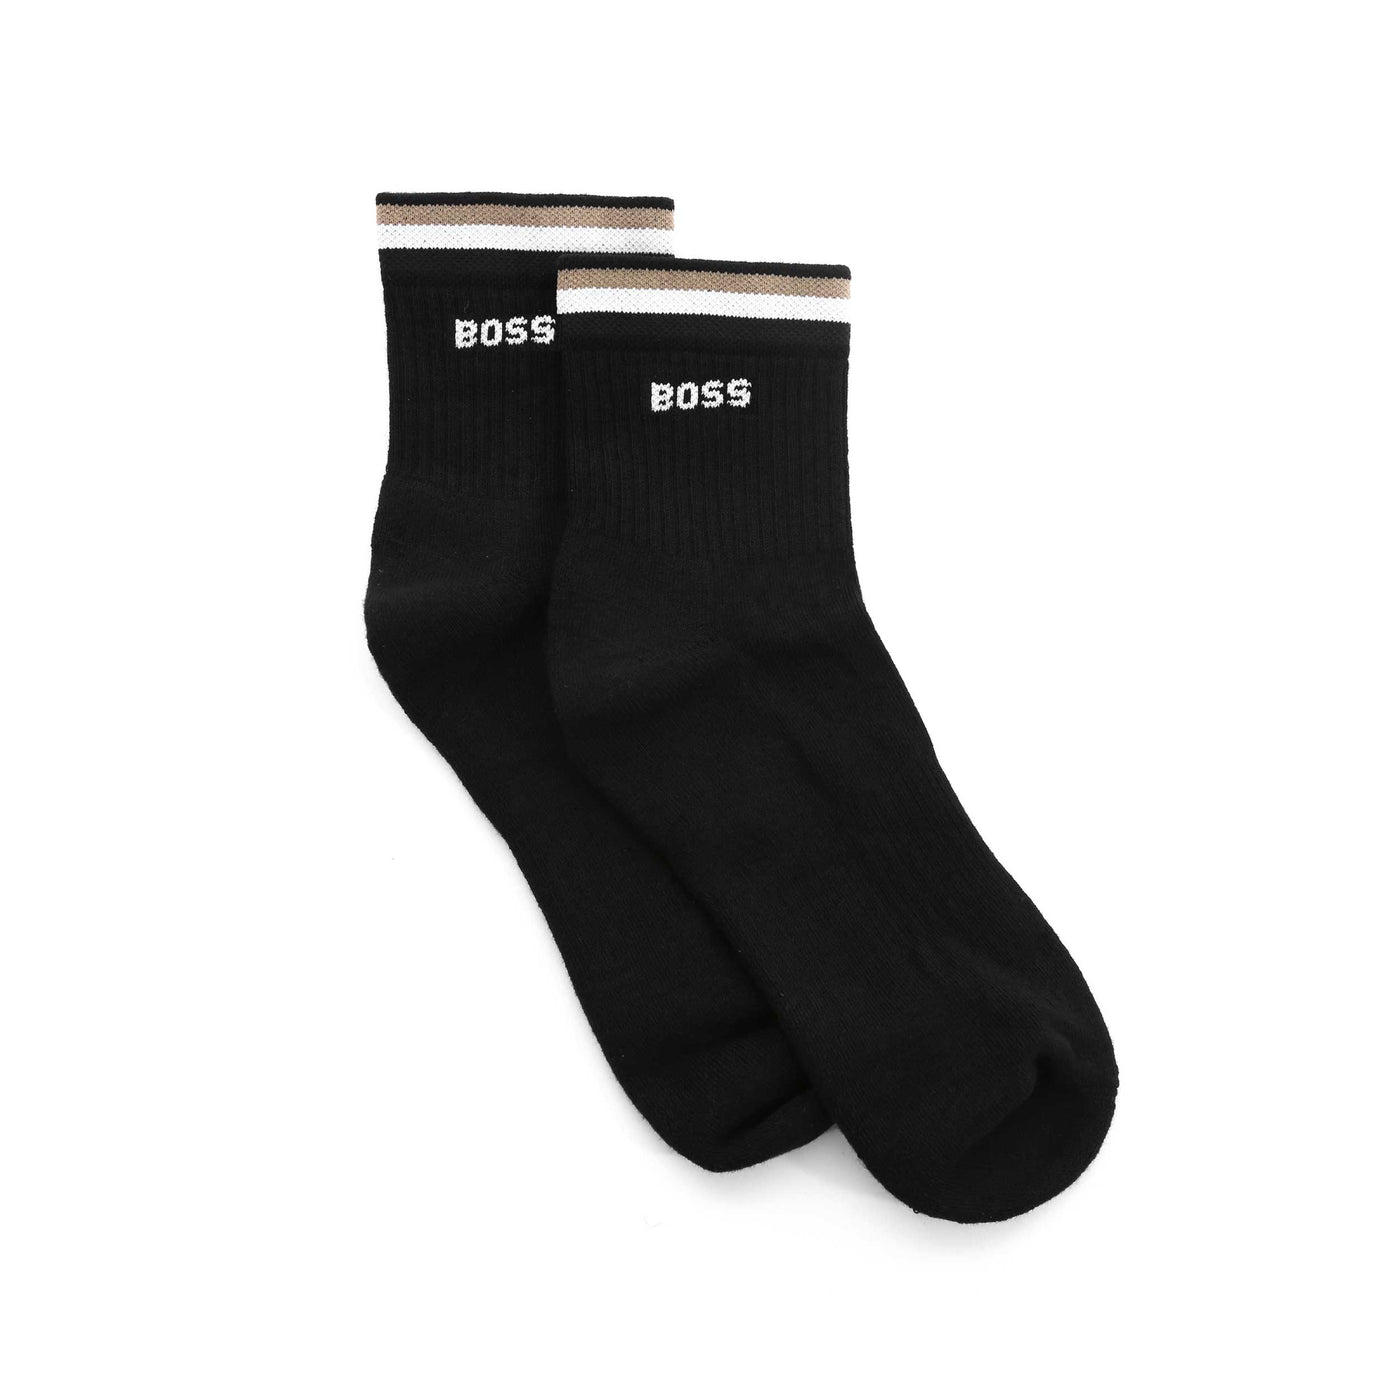 BOSS SH Rib Iconic CC Sock in Black